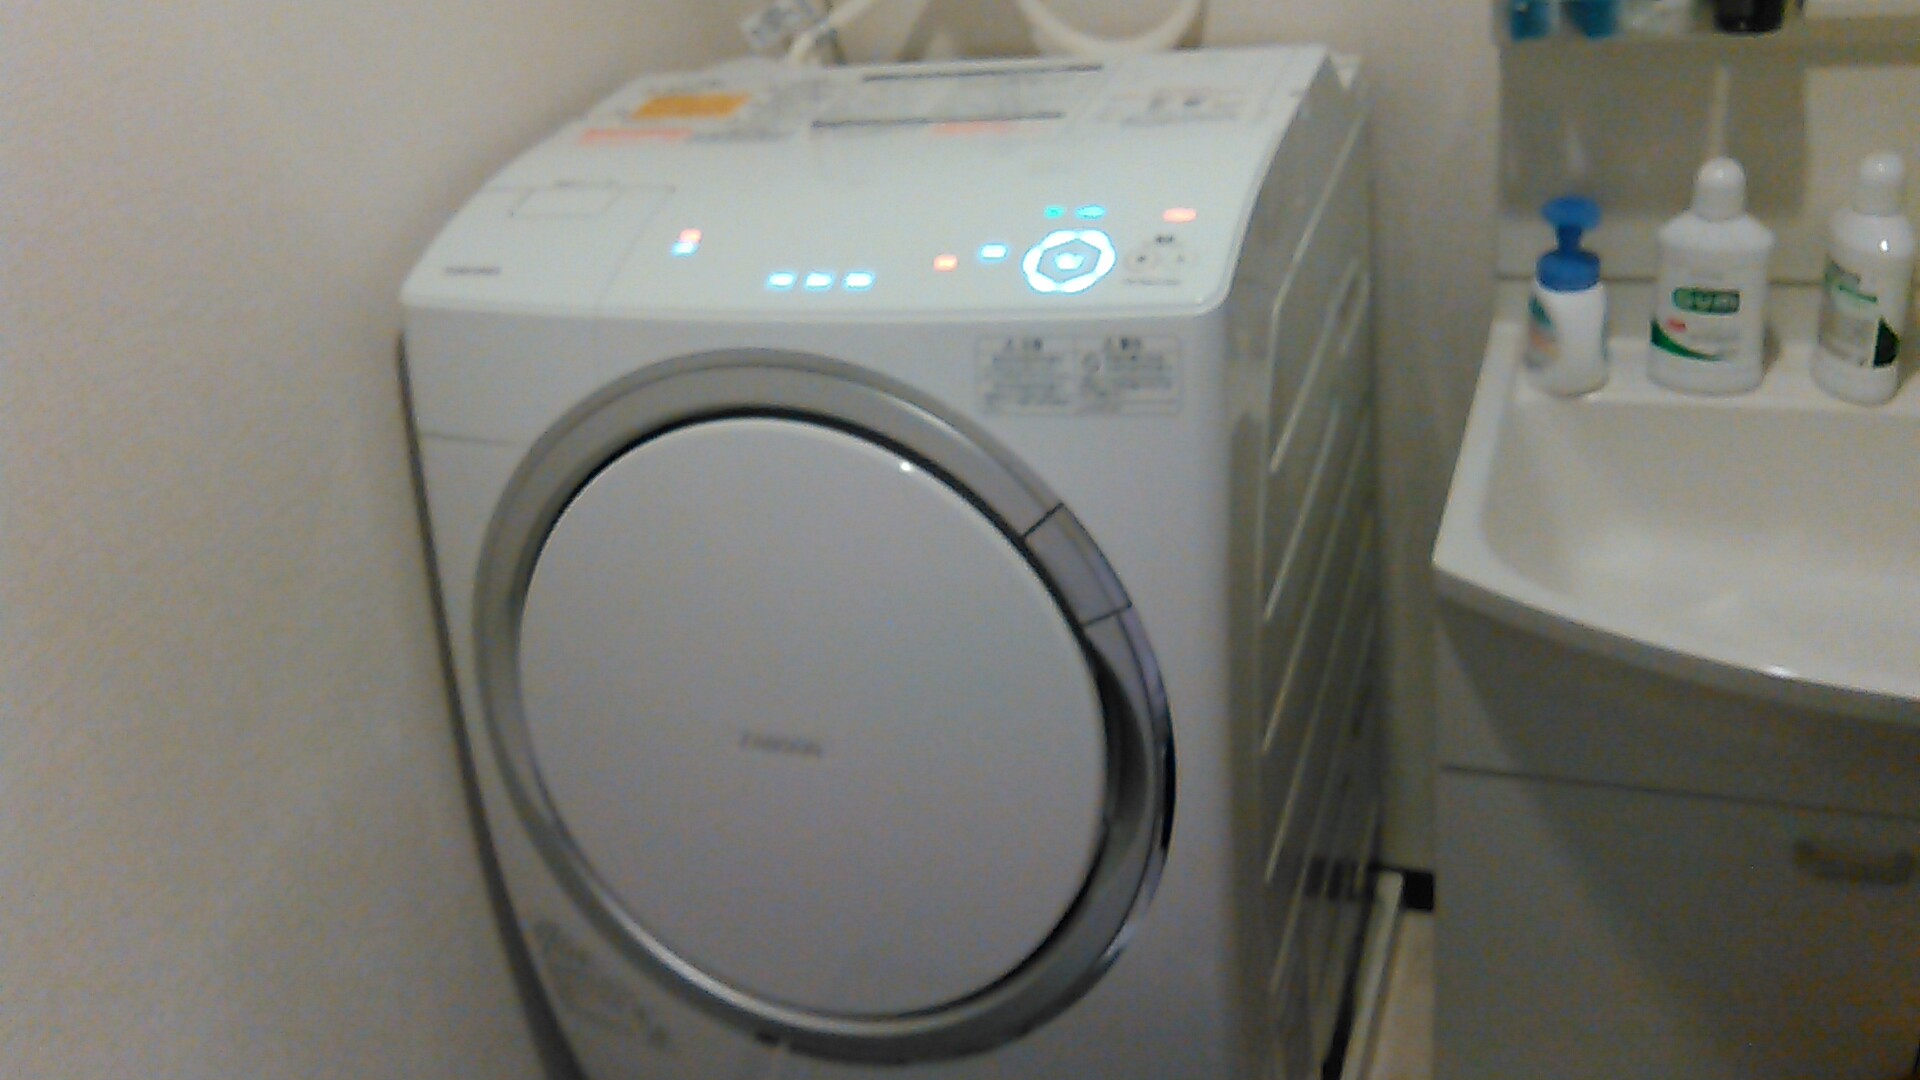 愛知県瀬戸市追分町 東芝製 ドラム式洗濯機 分解クリーニング作業